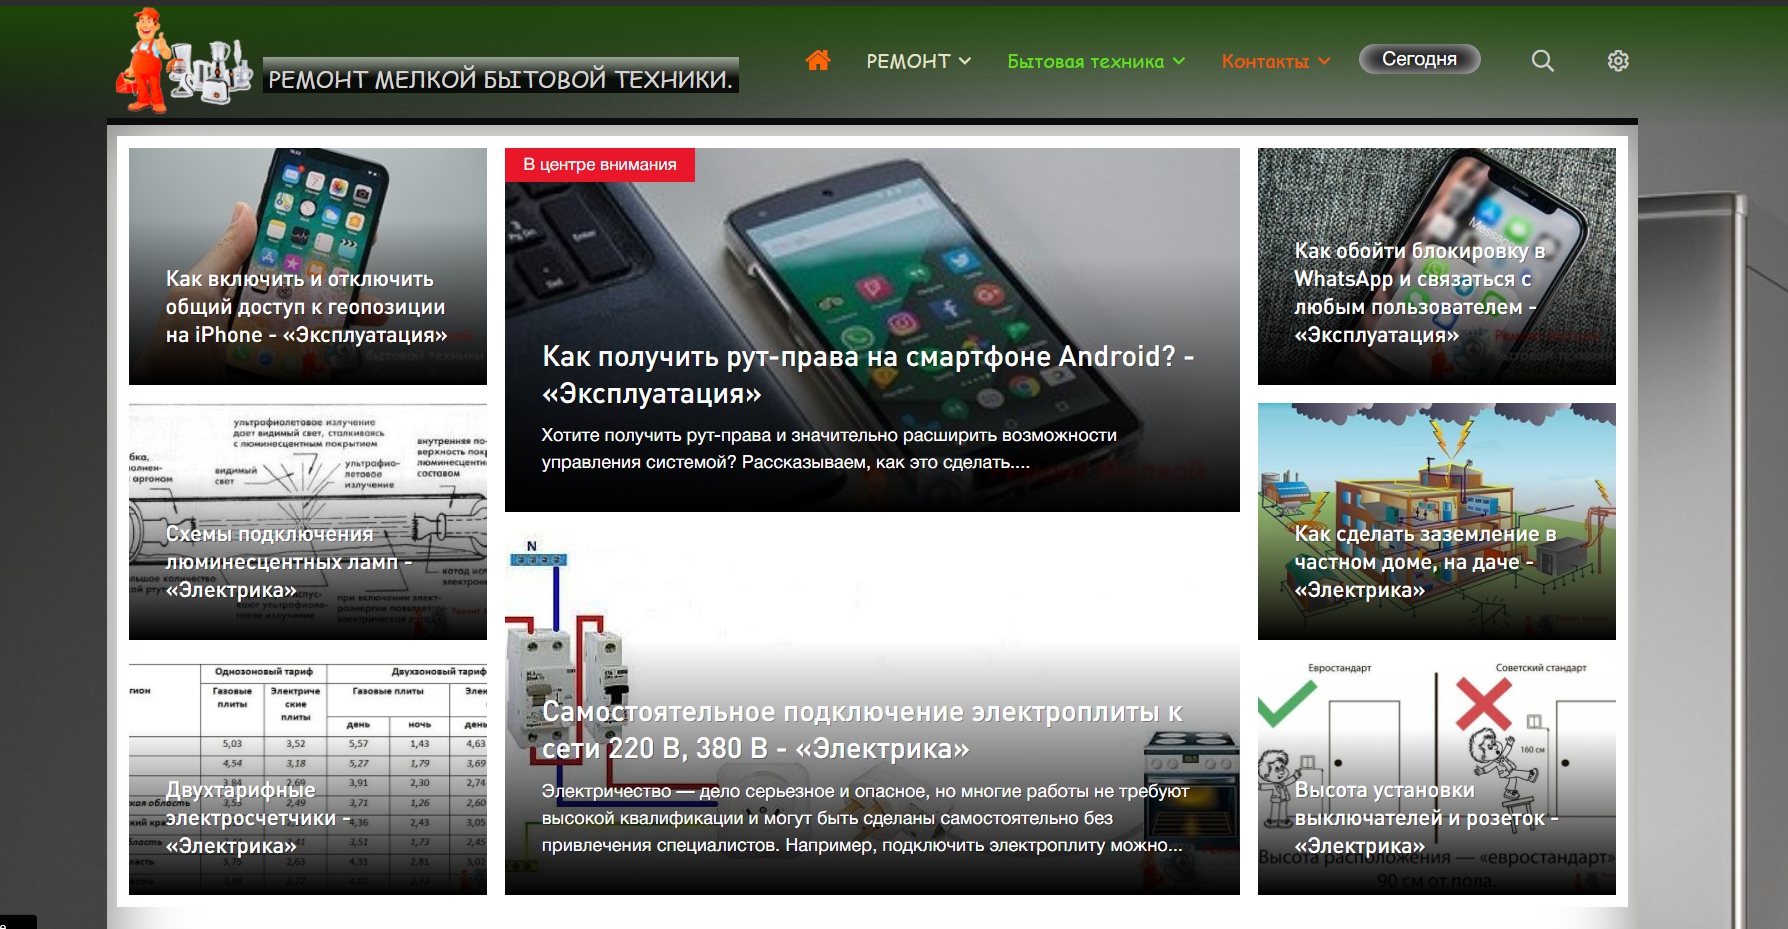 remtlt.ru - –емонт мелкой бытовой техники своими руками.